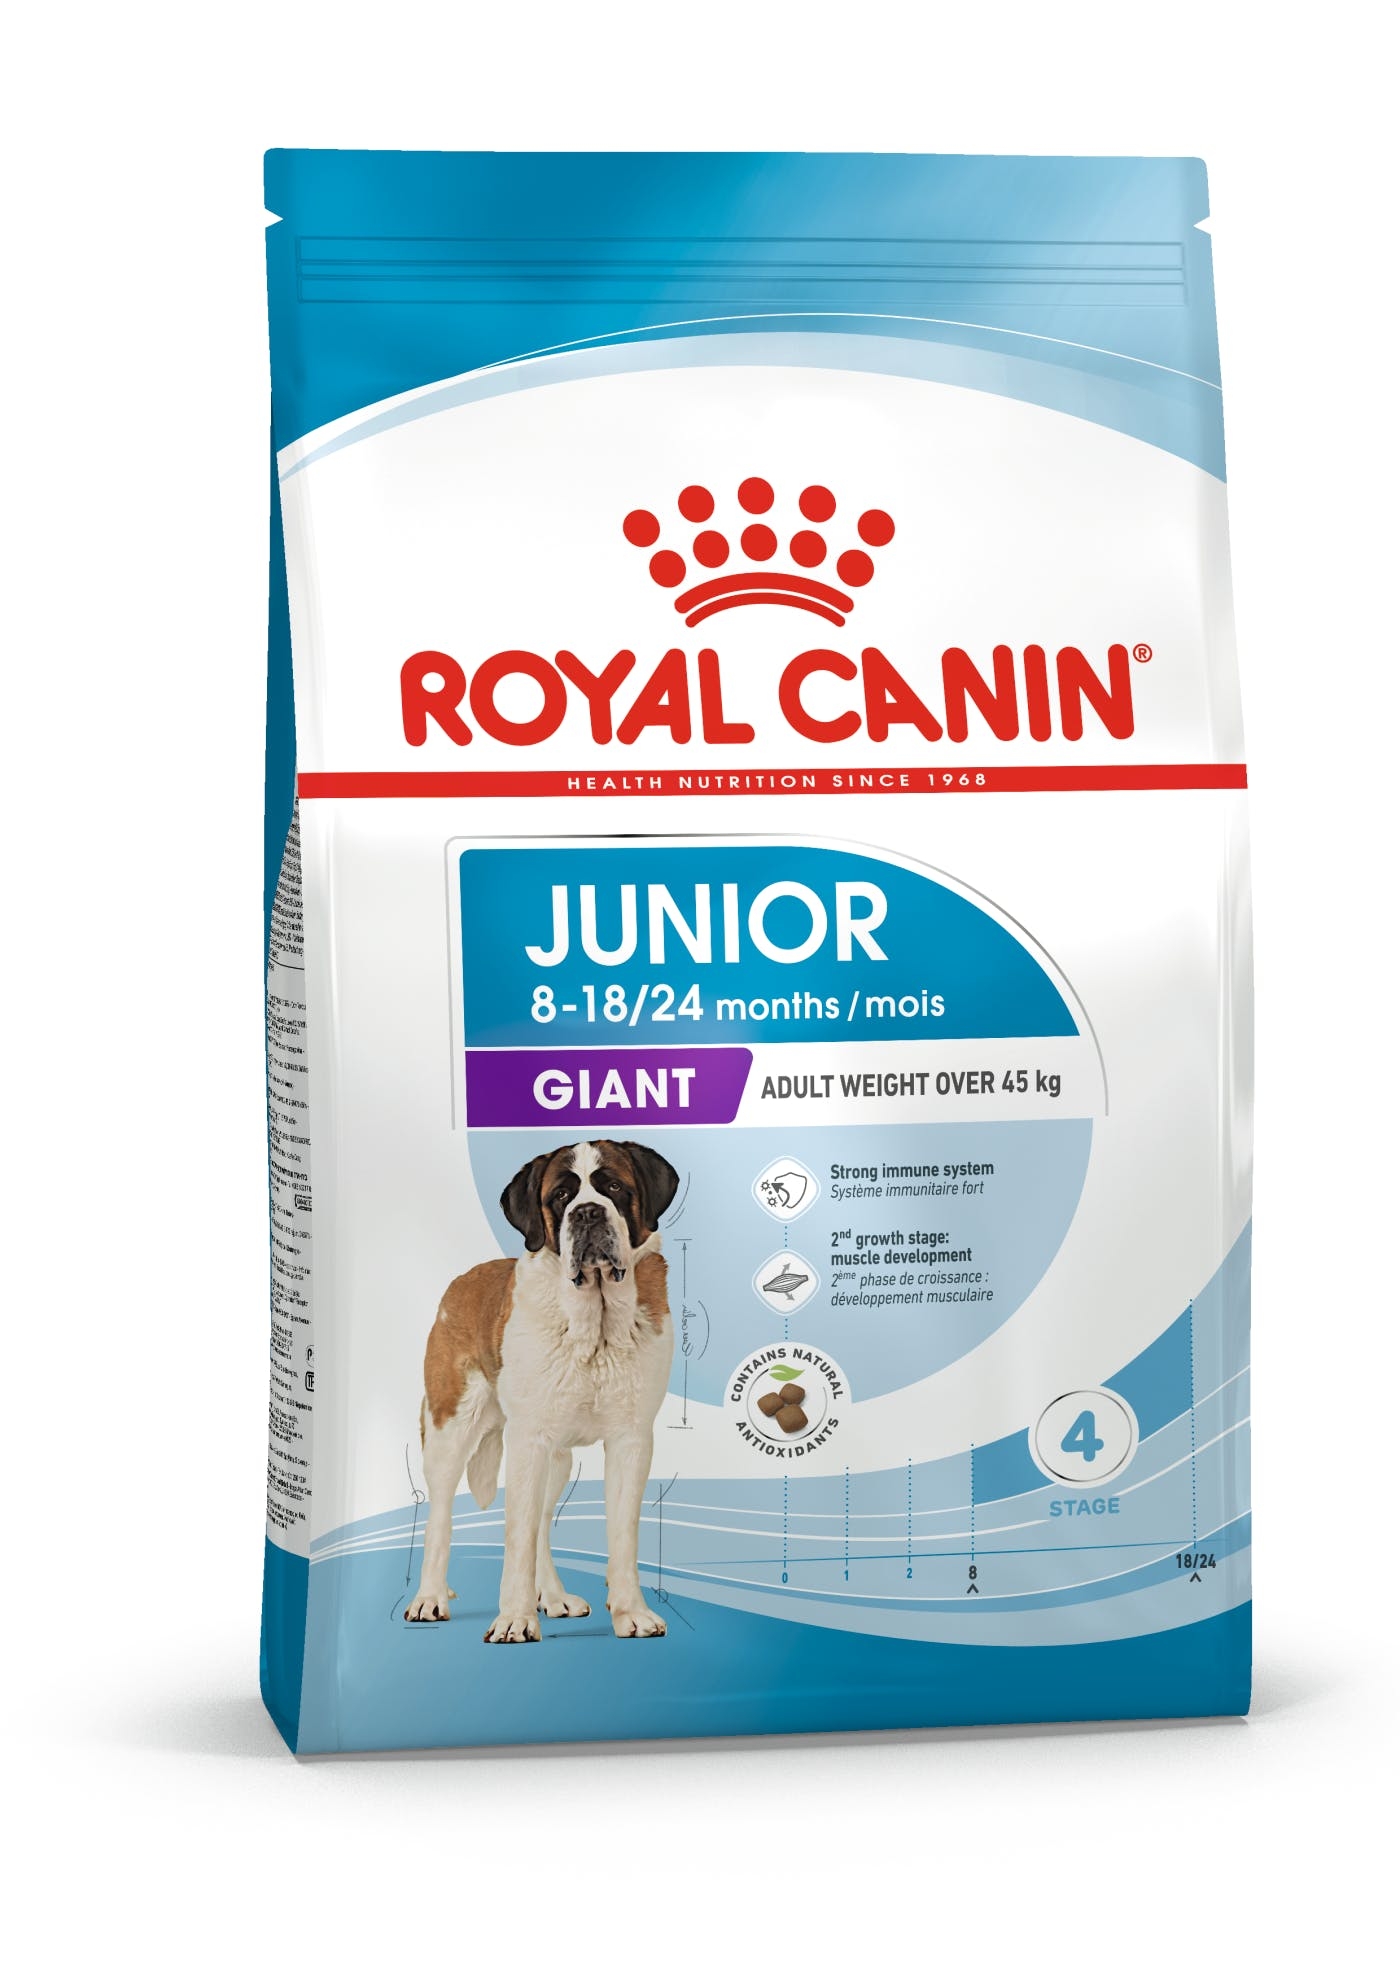 Billede af Royal Canin Giant Junior. Hunde fra 8 til 18/24 måneder. Voksenvægt over 45 kg. (15kg) hos Alttilhundogkat.dk